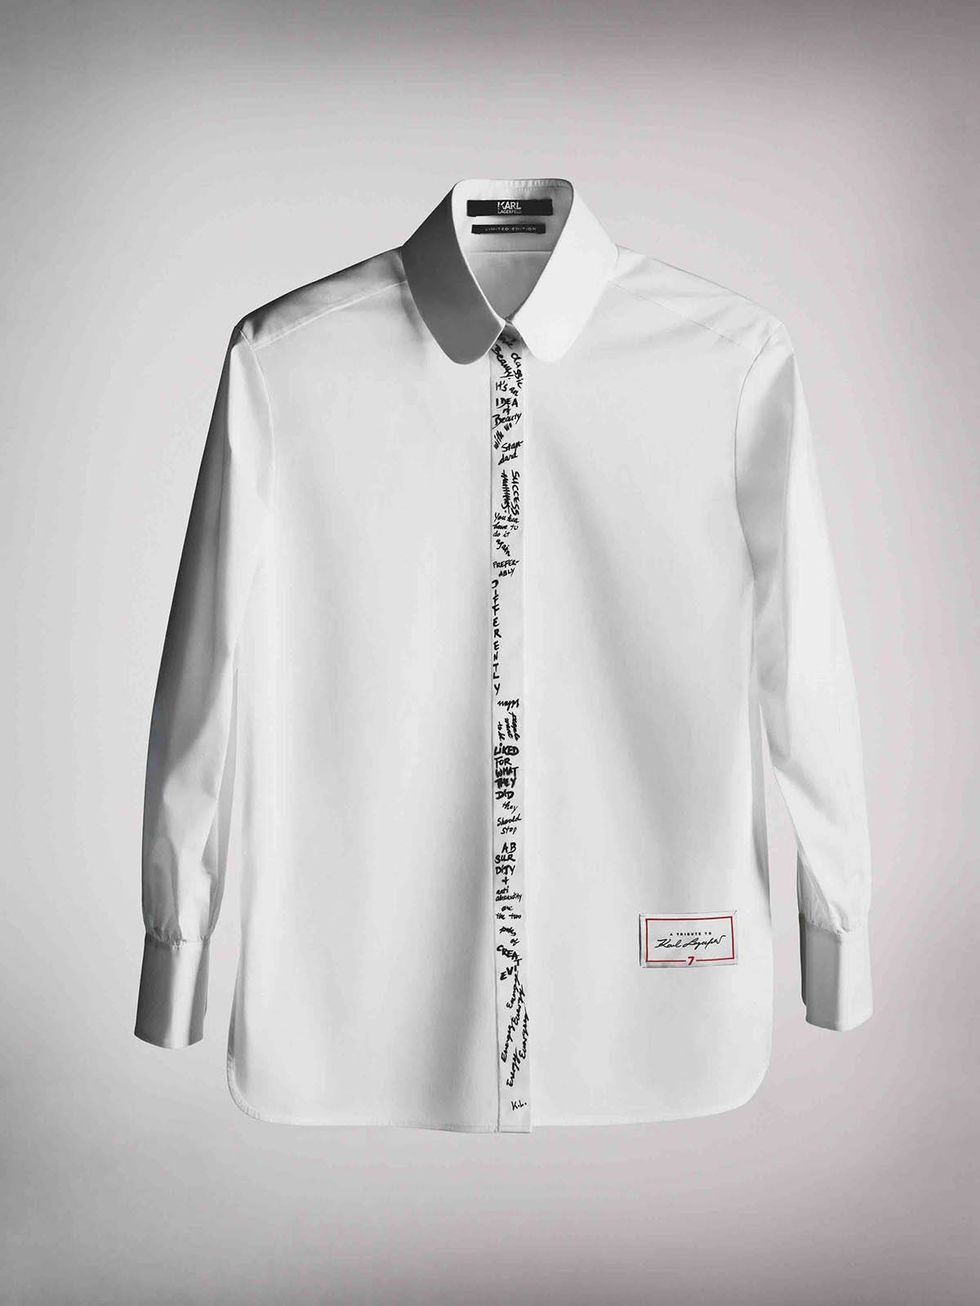 卡爾團隊發起Tribute to Karl活動，與名人們聯名設計卡爾拉婓格（ Karl Lagerfeld）生前最愛的白襯衫